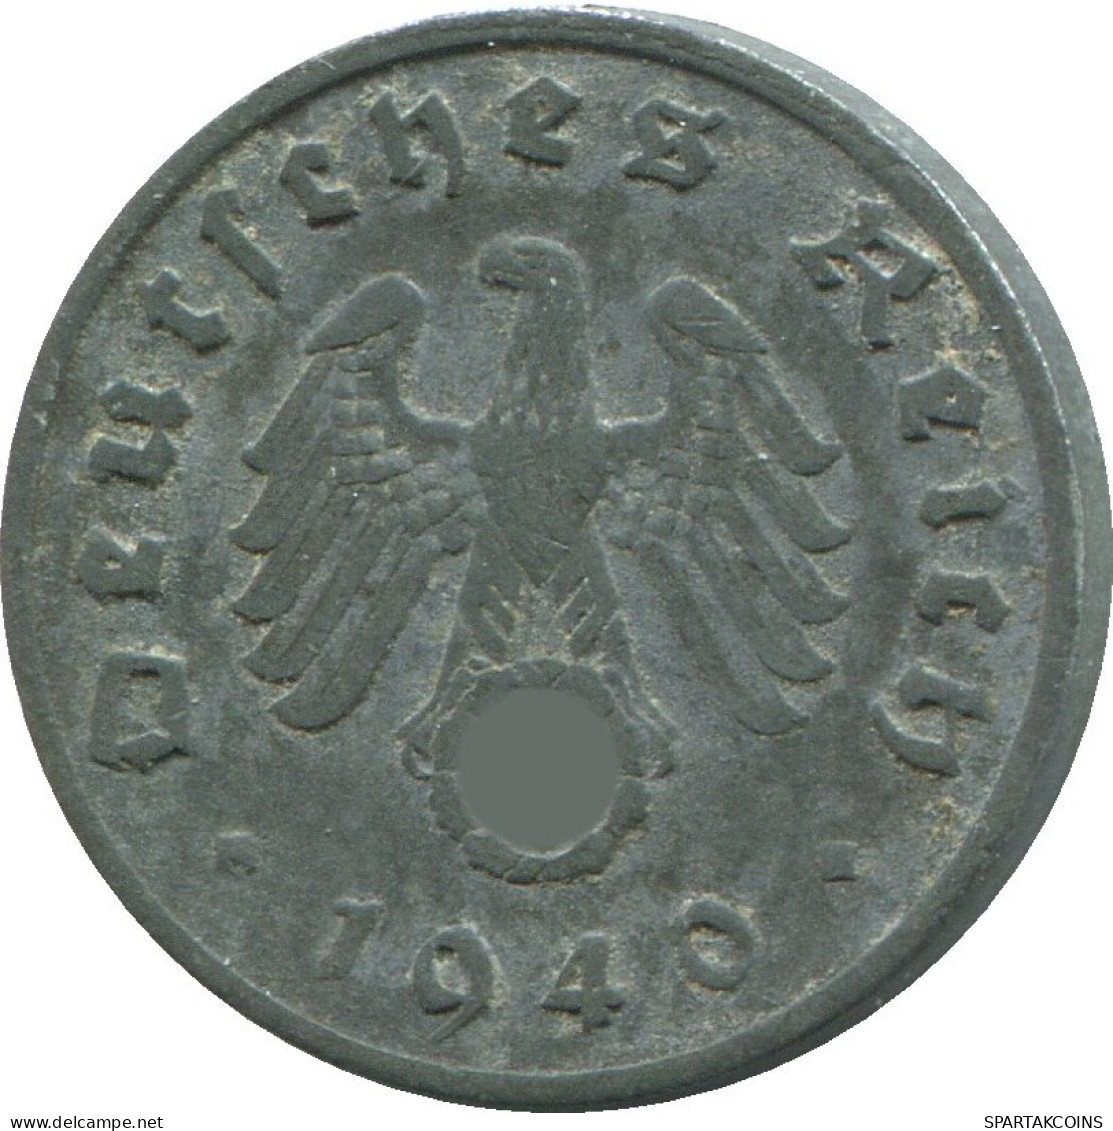 1 REICHSPFENNIG 1940 A ALLEMAGNE Pièce GERMANY #DE10421.5.F.A - 1 Reichspfennig